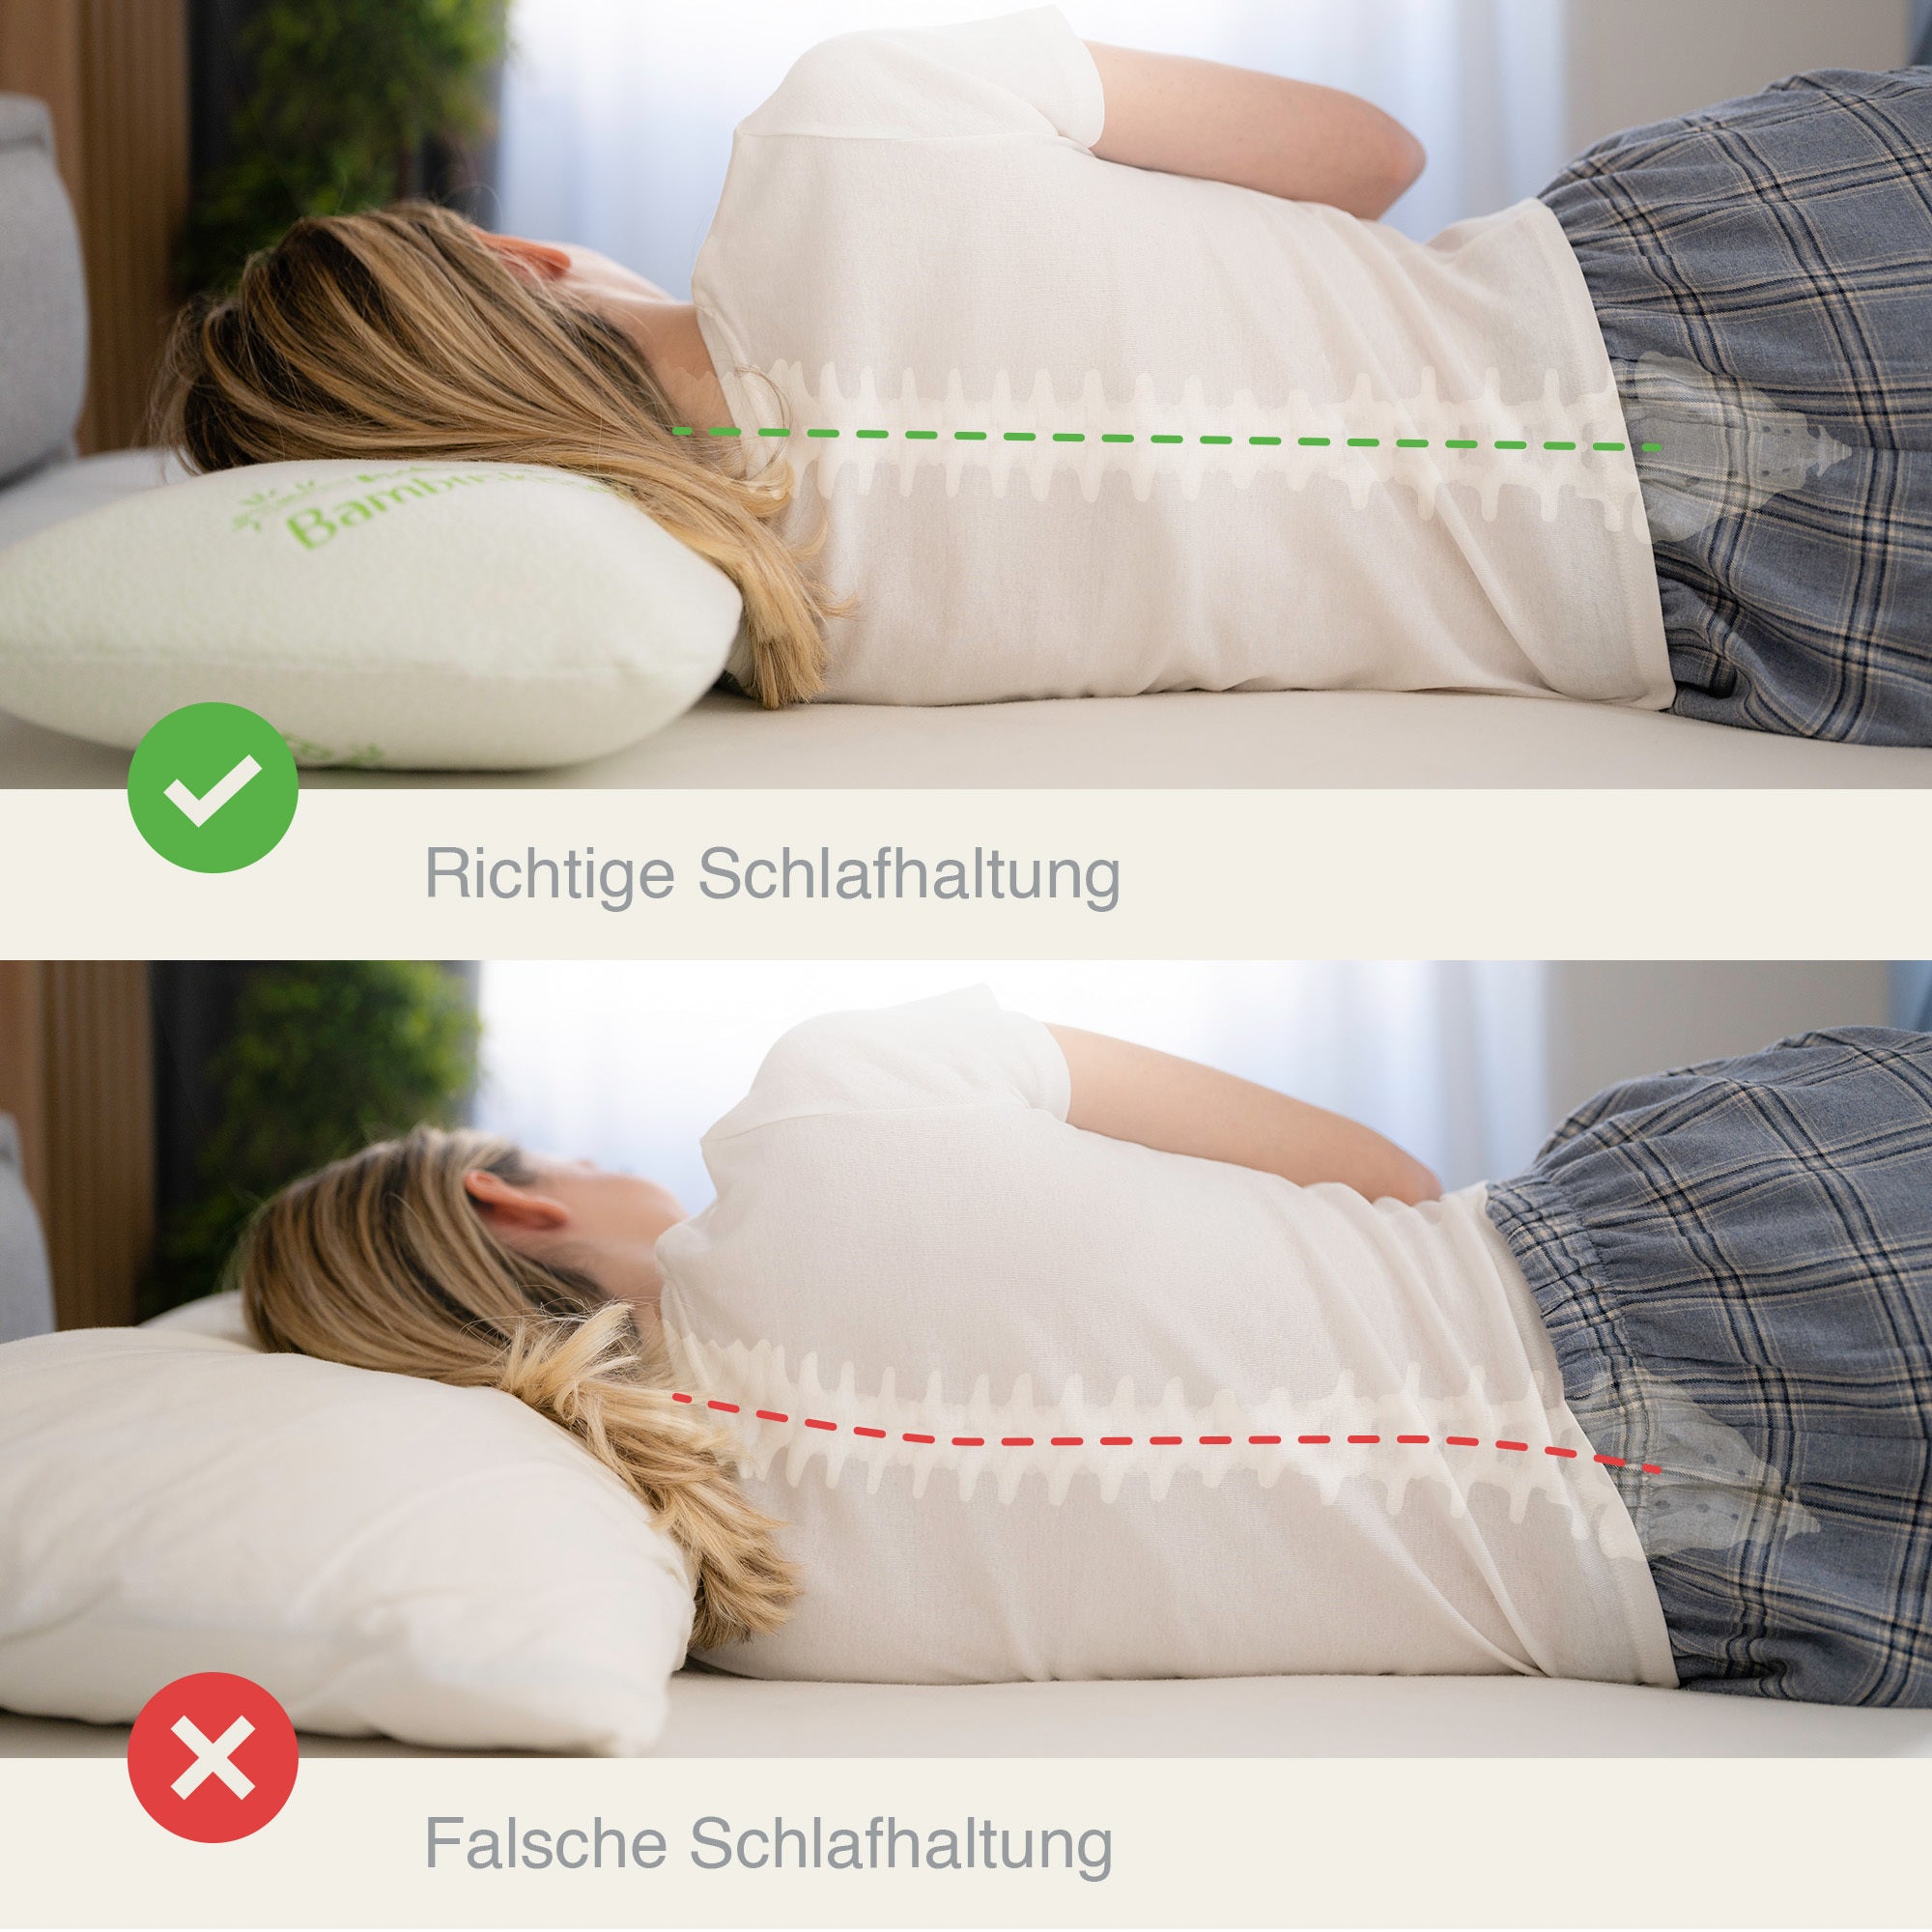 Good vs bad sleeping posture